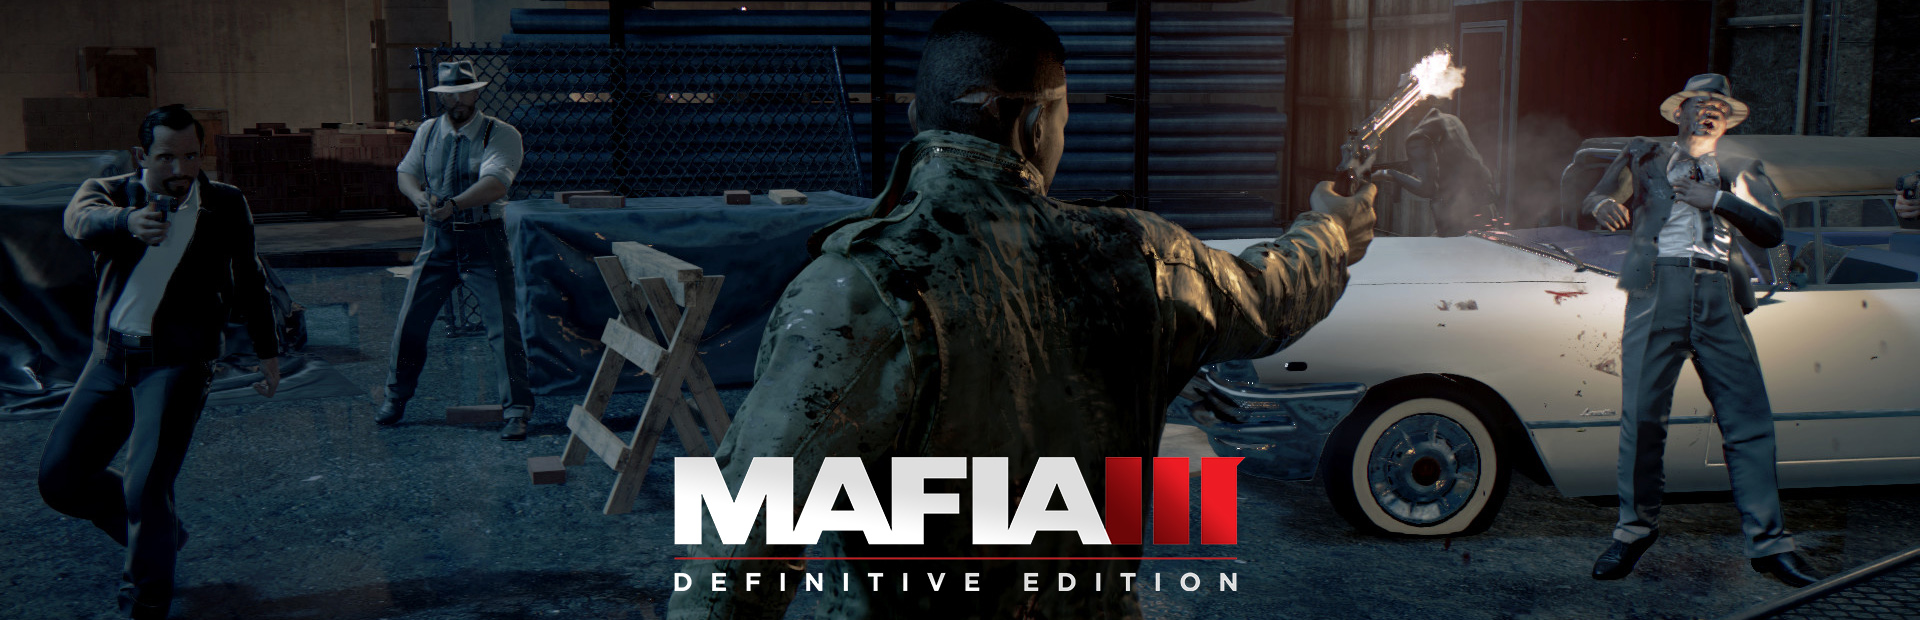 دانلود بازی Mafia III: Definitive Edition برای PC | گیمباتو